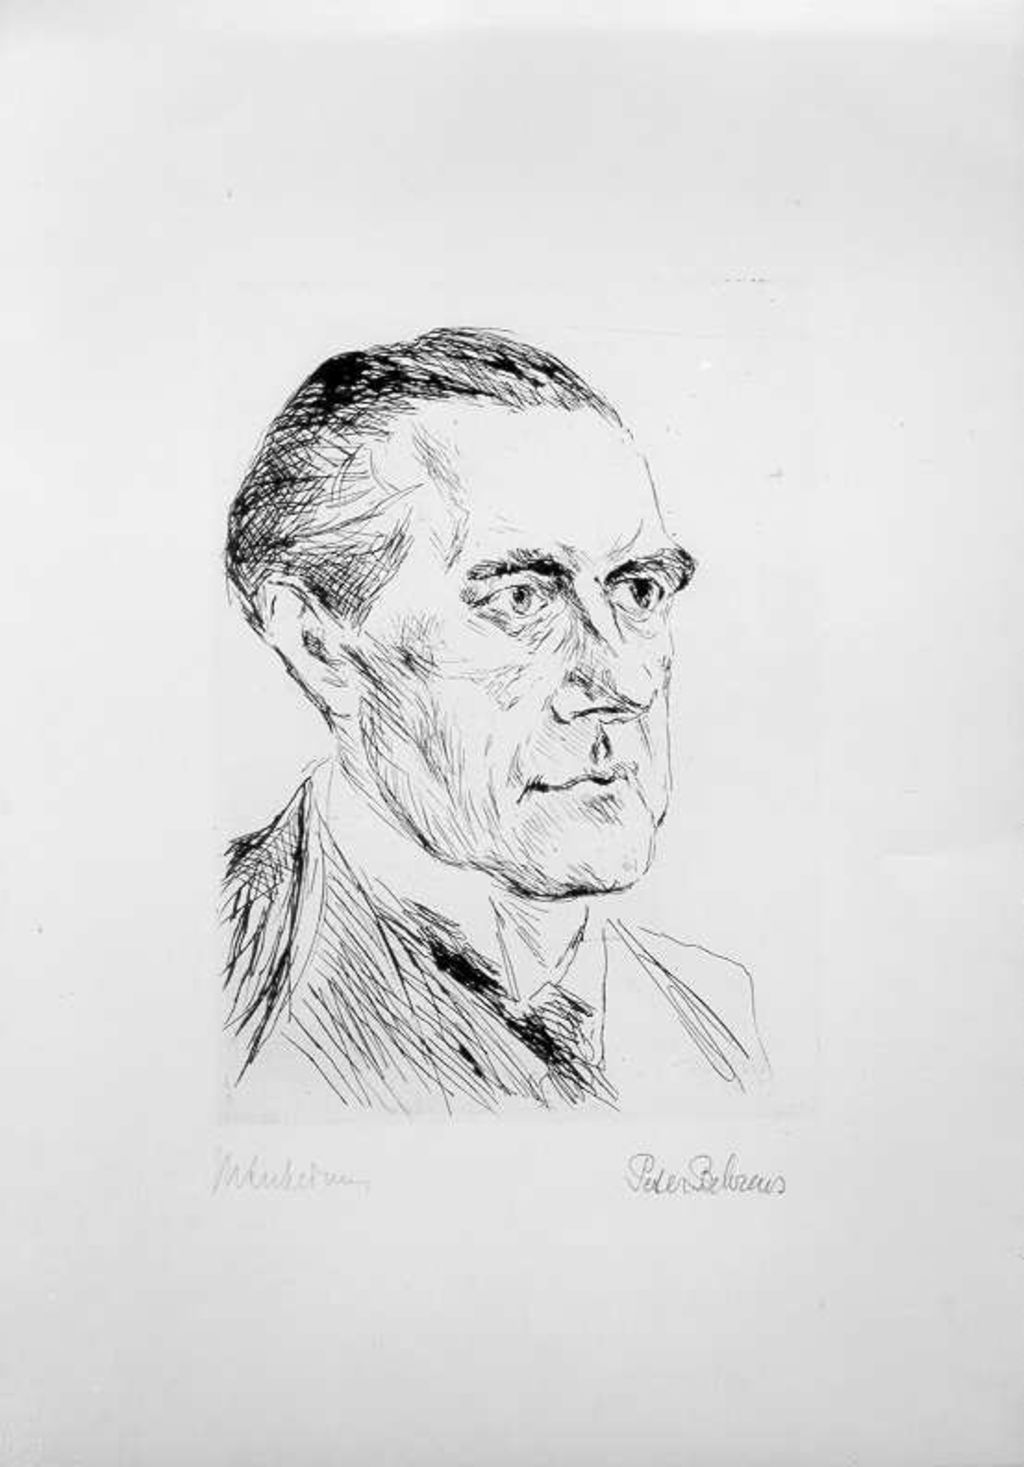 Grafik: Max Liebermann "Porträt des Peter Behrens", 1900/1933